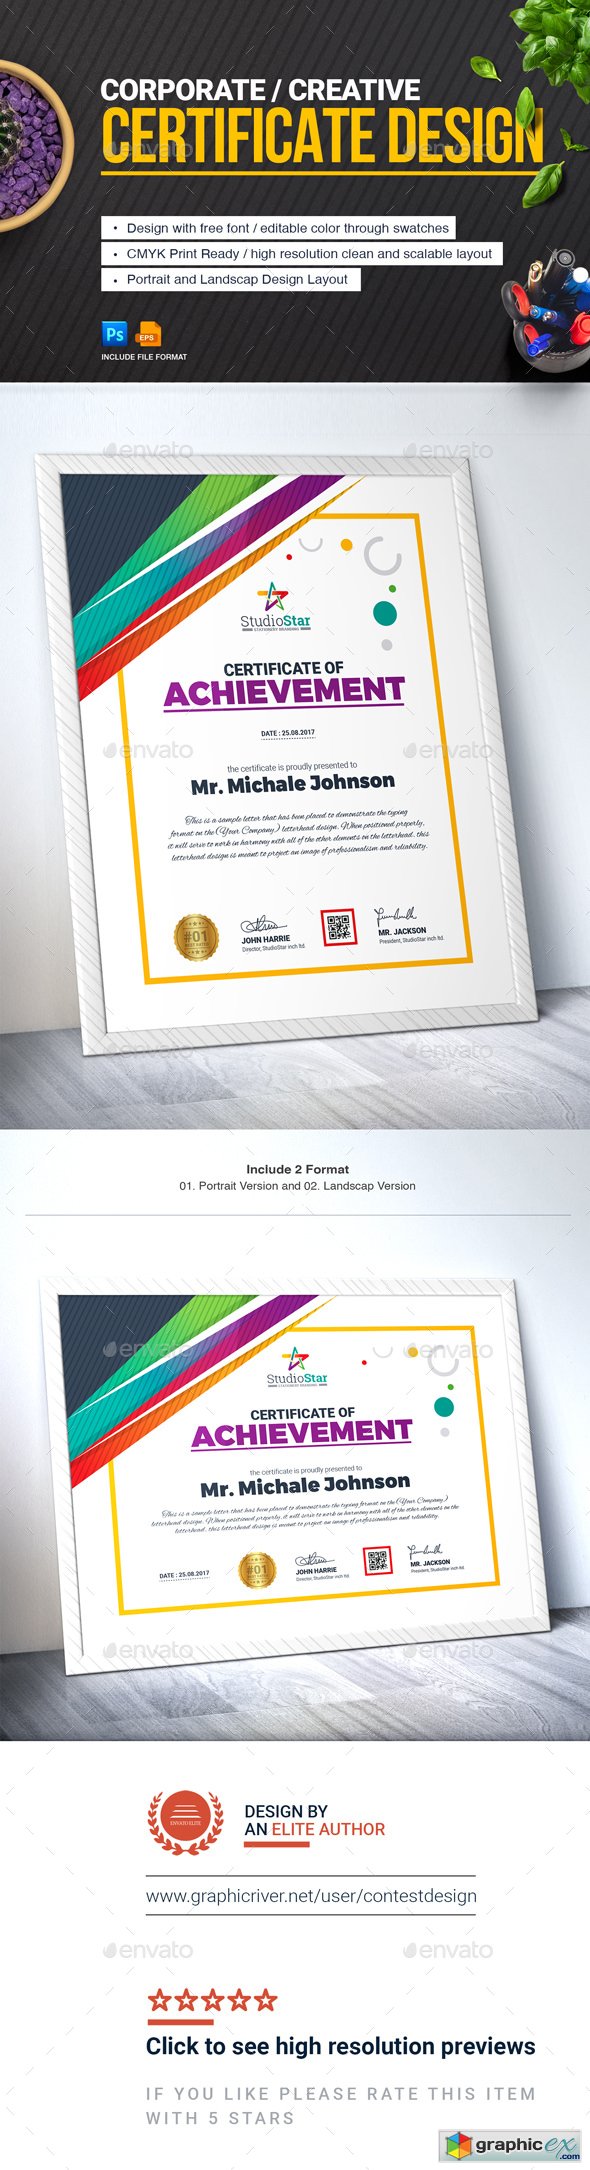 Certificate Design Template | Certificate of Achievement